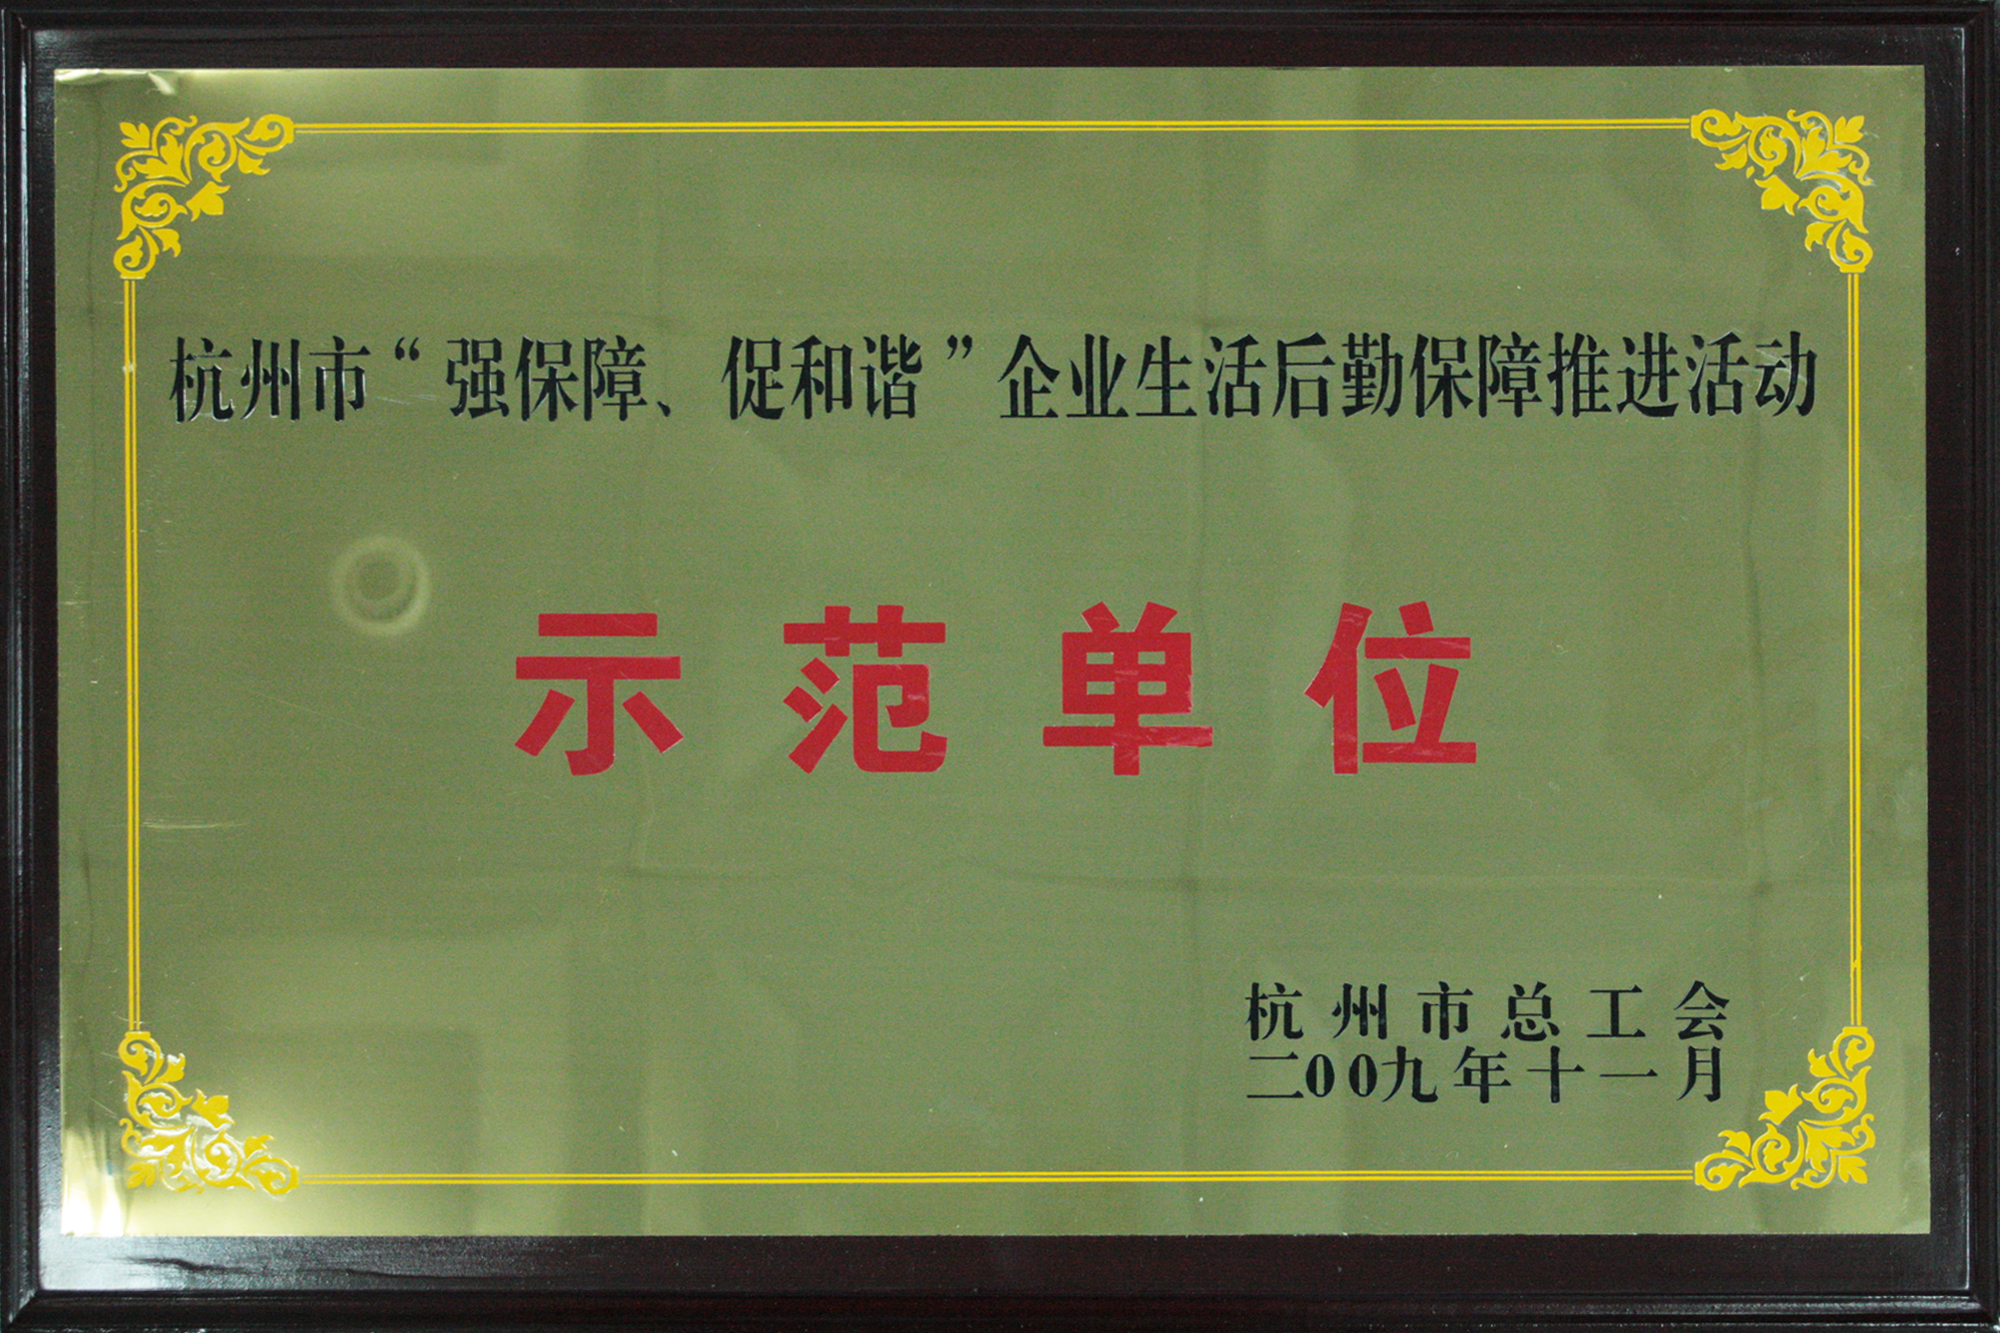 2009年度杭州市“强保障、促和谐”企业生活后勤保障推进活动示范单位